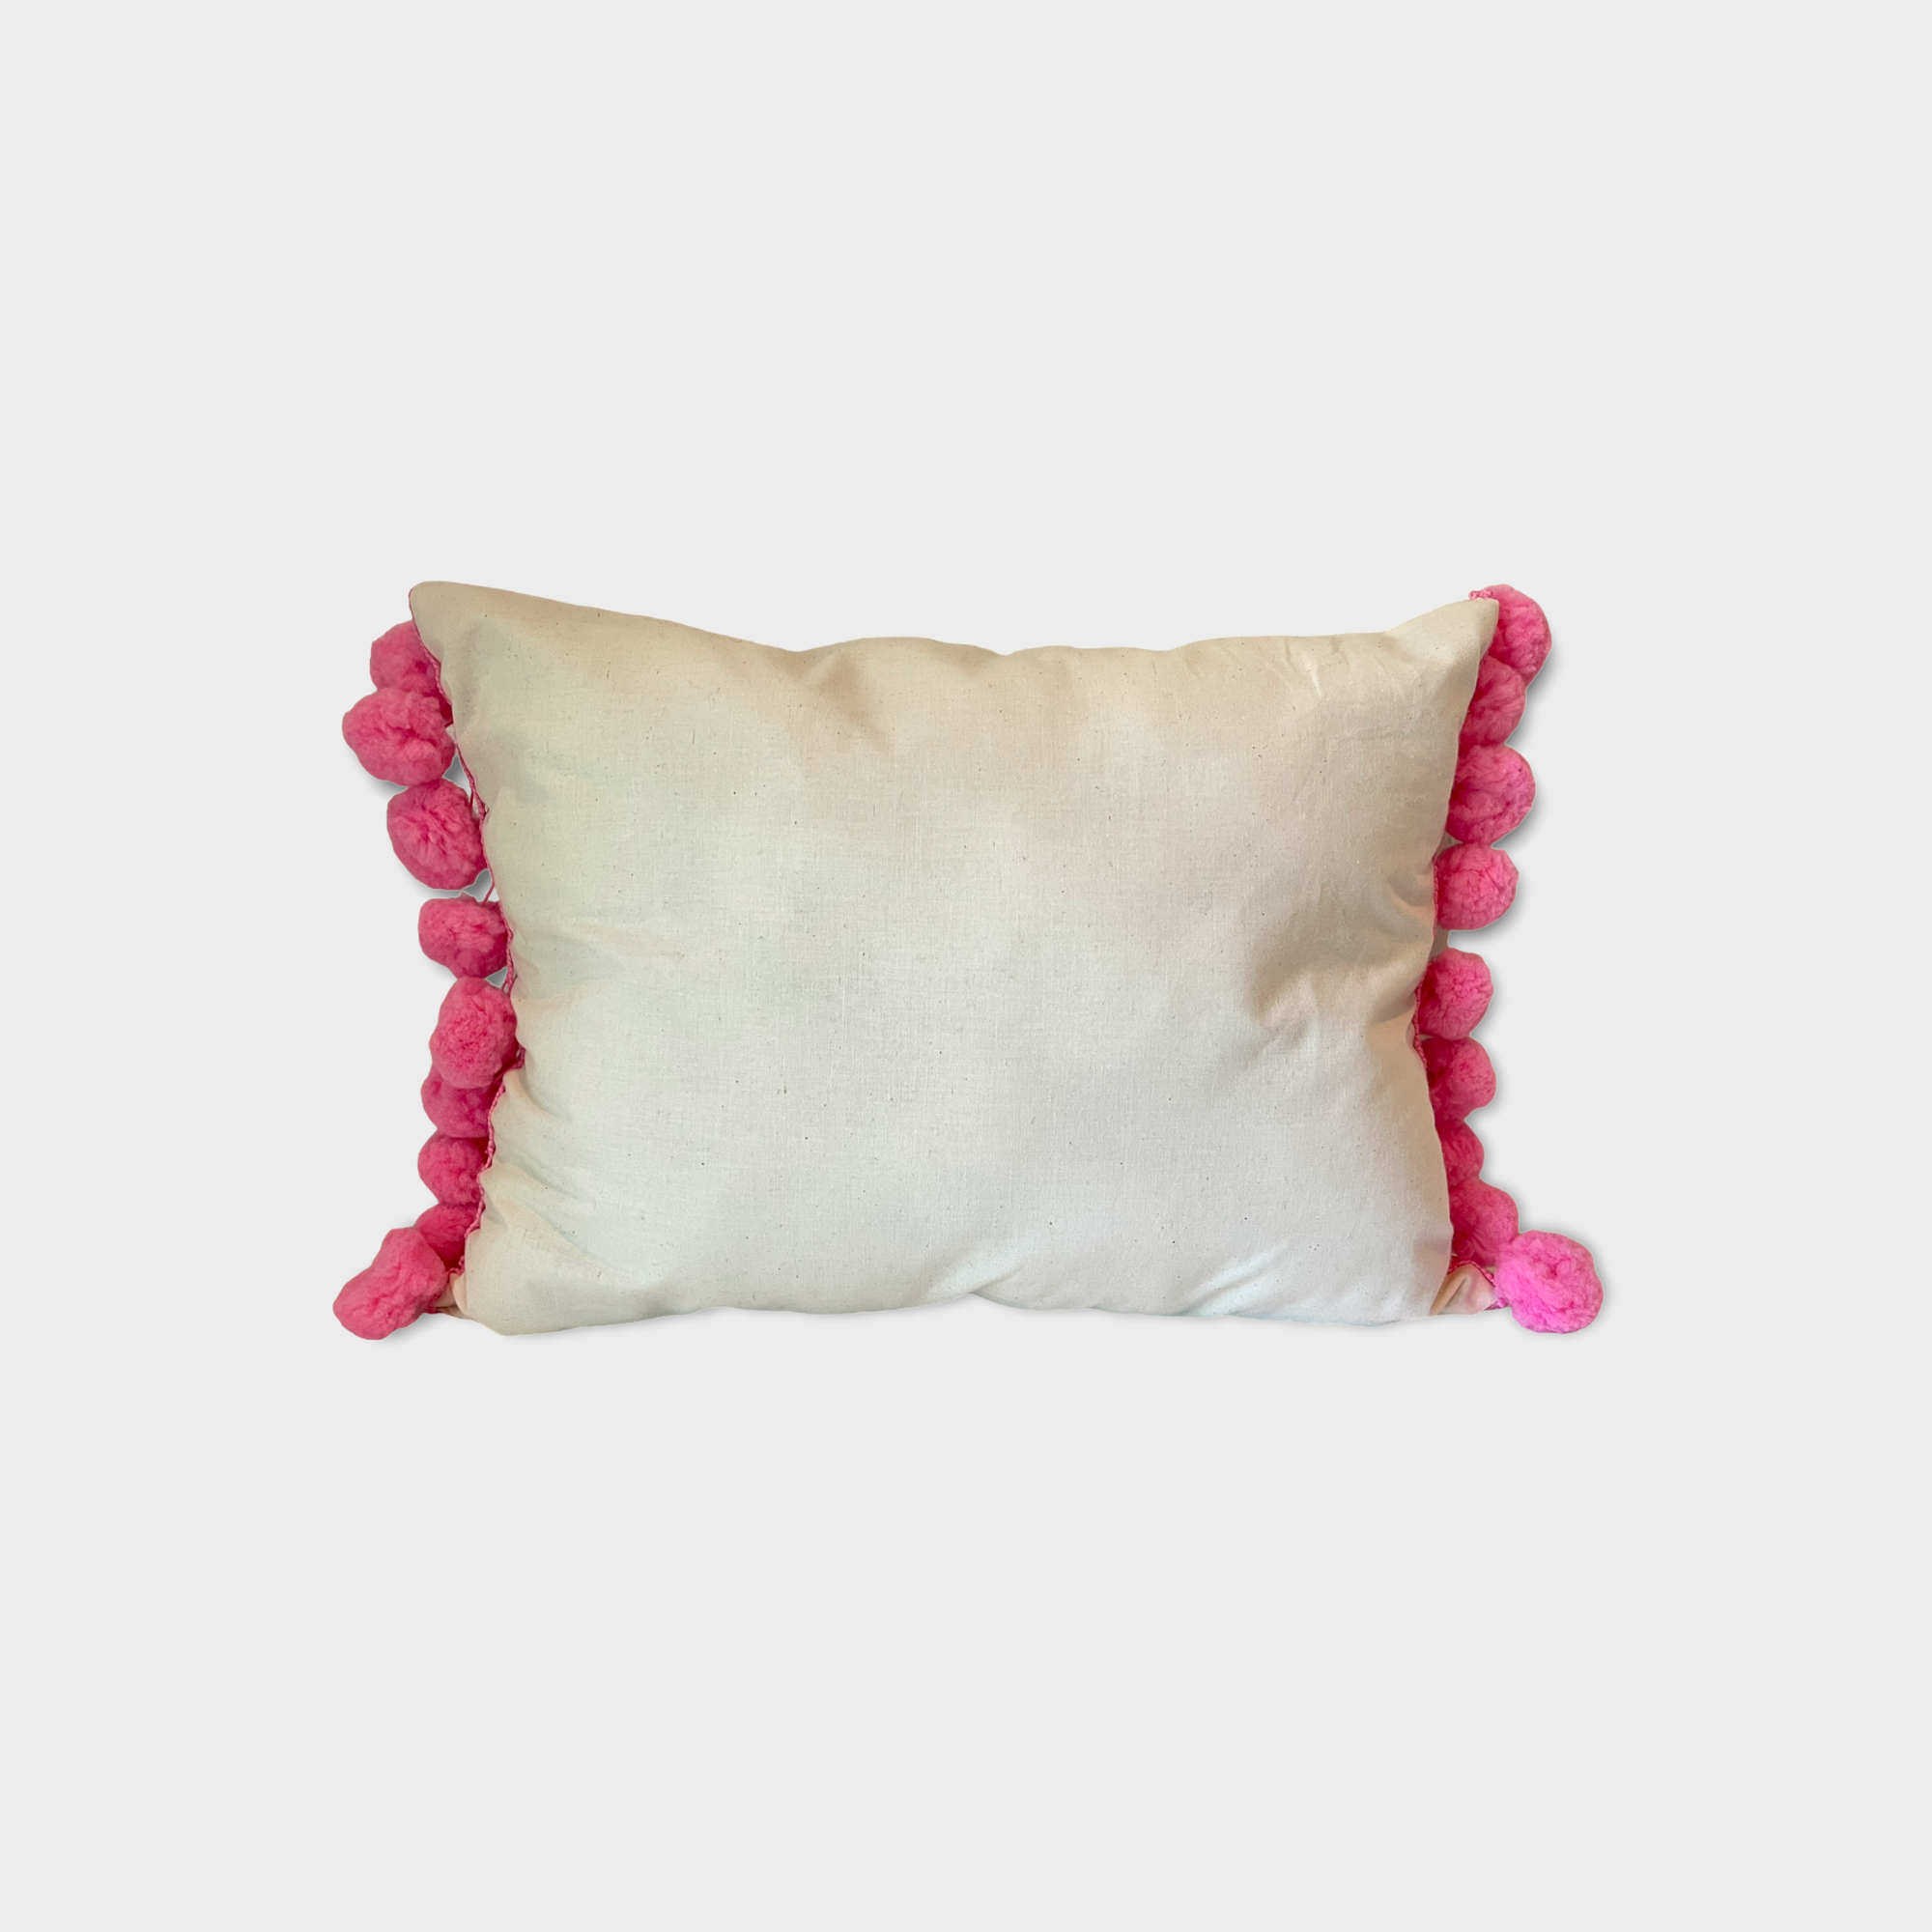 Otomi throw pillow, pink pompom